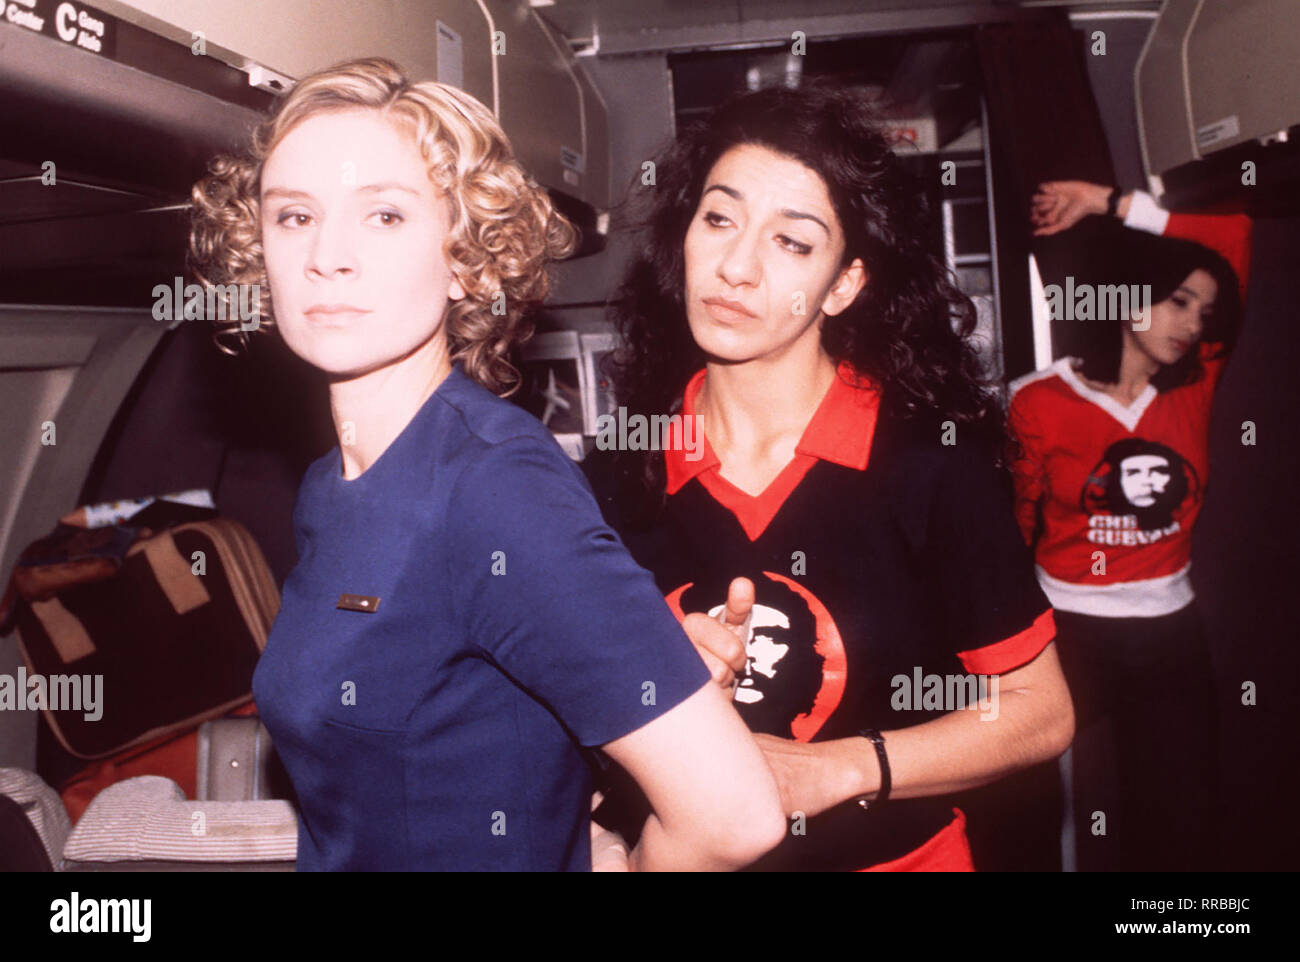 Fernsehfilm über die RAF-Geiselnahme des Arbeit-geberpräsidenten Hanns Martin Schleyer am 5.September 1977 und die Entführung der Lufthansa-maschine 'Landshut' am 13.Oktober durch ein palästi- nensisches Terror-kommando. Bild: Stewardess Gaby Dillmann (SUSANNE SCHÄFER) wird von der Entführerin Souheila Andrawes (NEZUKET SELBUS) gefesselt. Hinten: die Entführerin Nadia (ISABELLA PARKINSON). Regie: Heinrich Breloer aka. Entführt die 'Landshut' / Überschrift: TODESSPIEL (2) / BRD 1996 Stock Photo